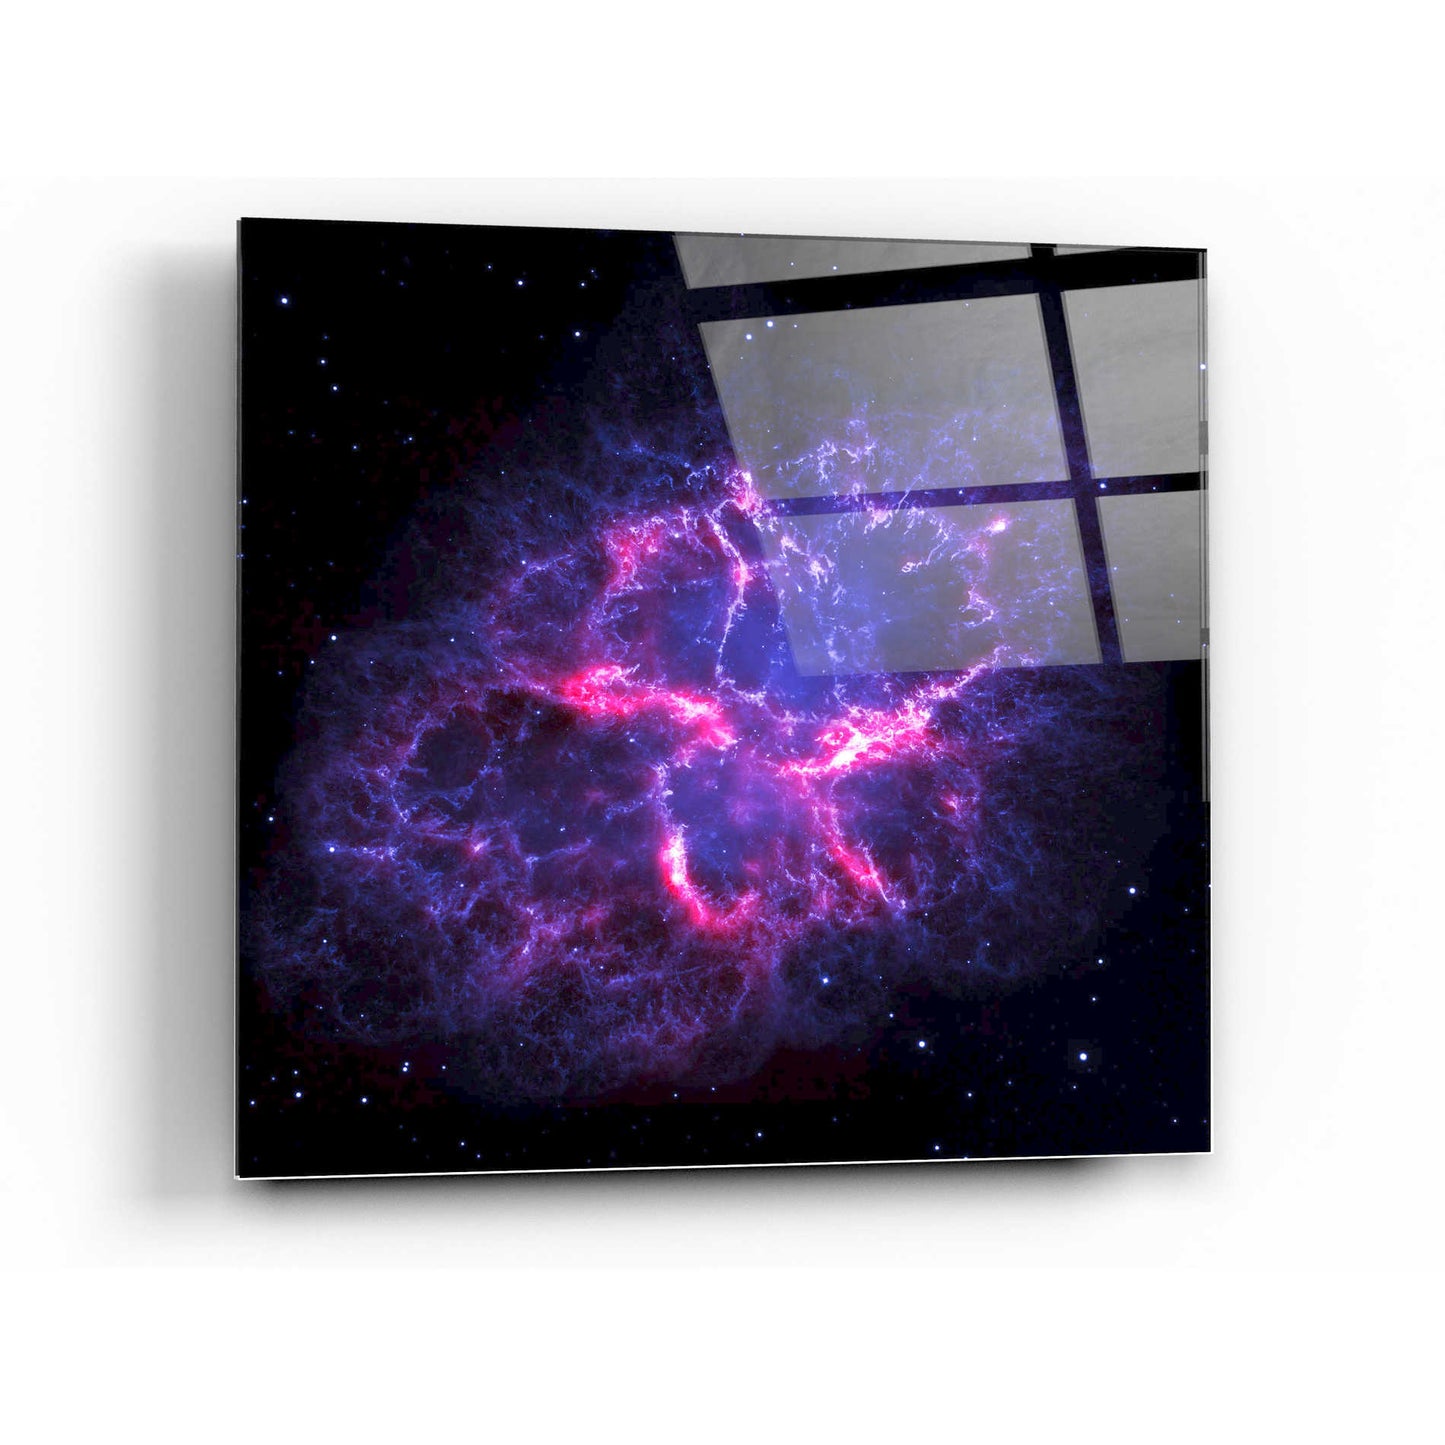 Epic Art "Crab Nebula" Hubble Space Telescope Acrylic Glass Wall Art,36x36